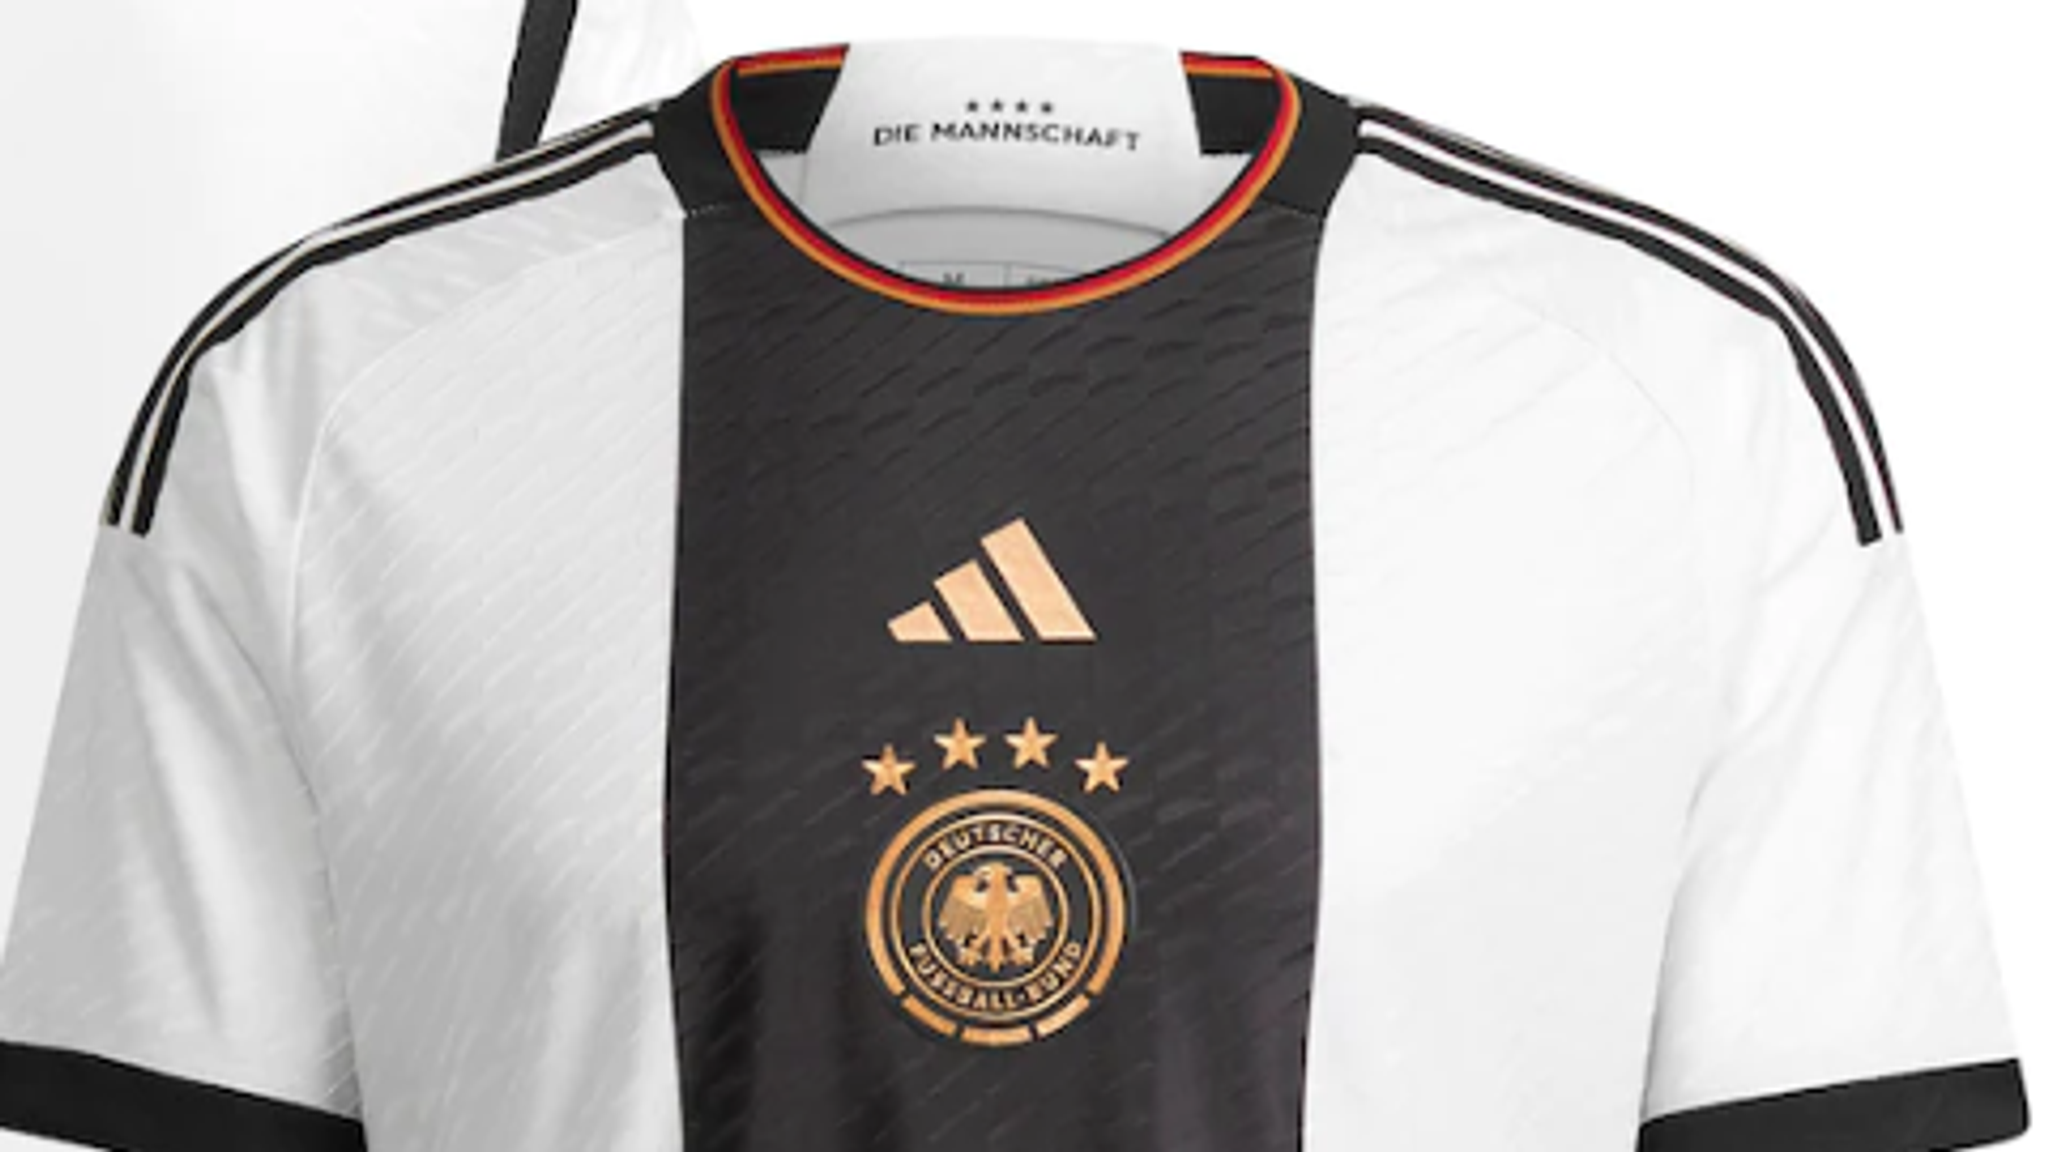 DFB-Team: Verwirrung um den Schriftzug "Die Mannschaft" im neuen Trikot